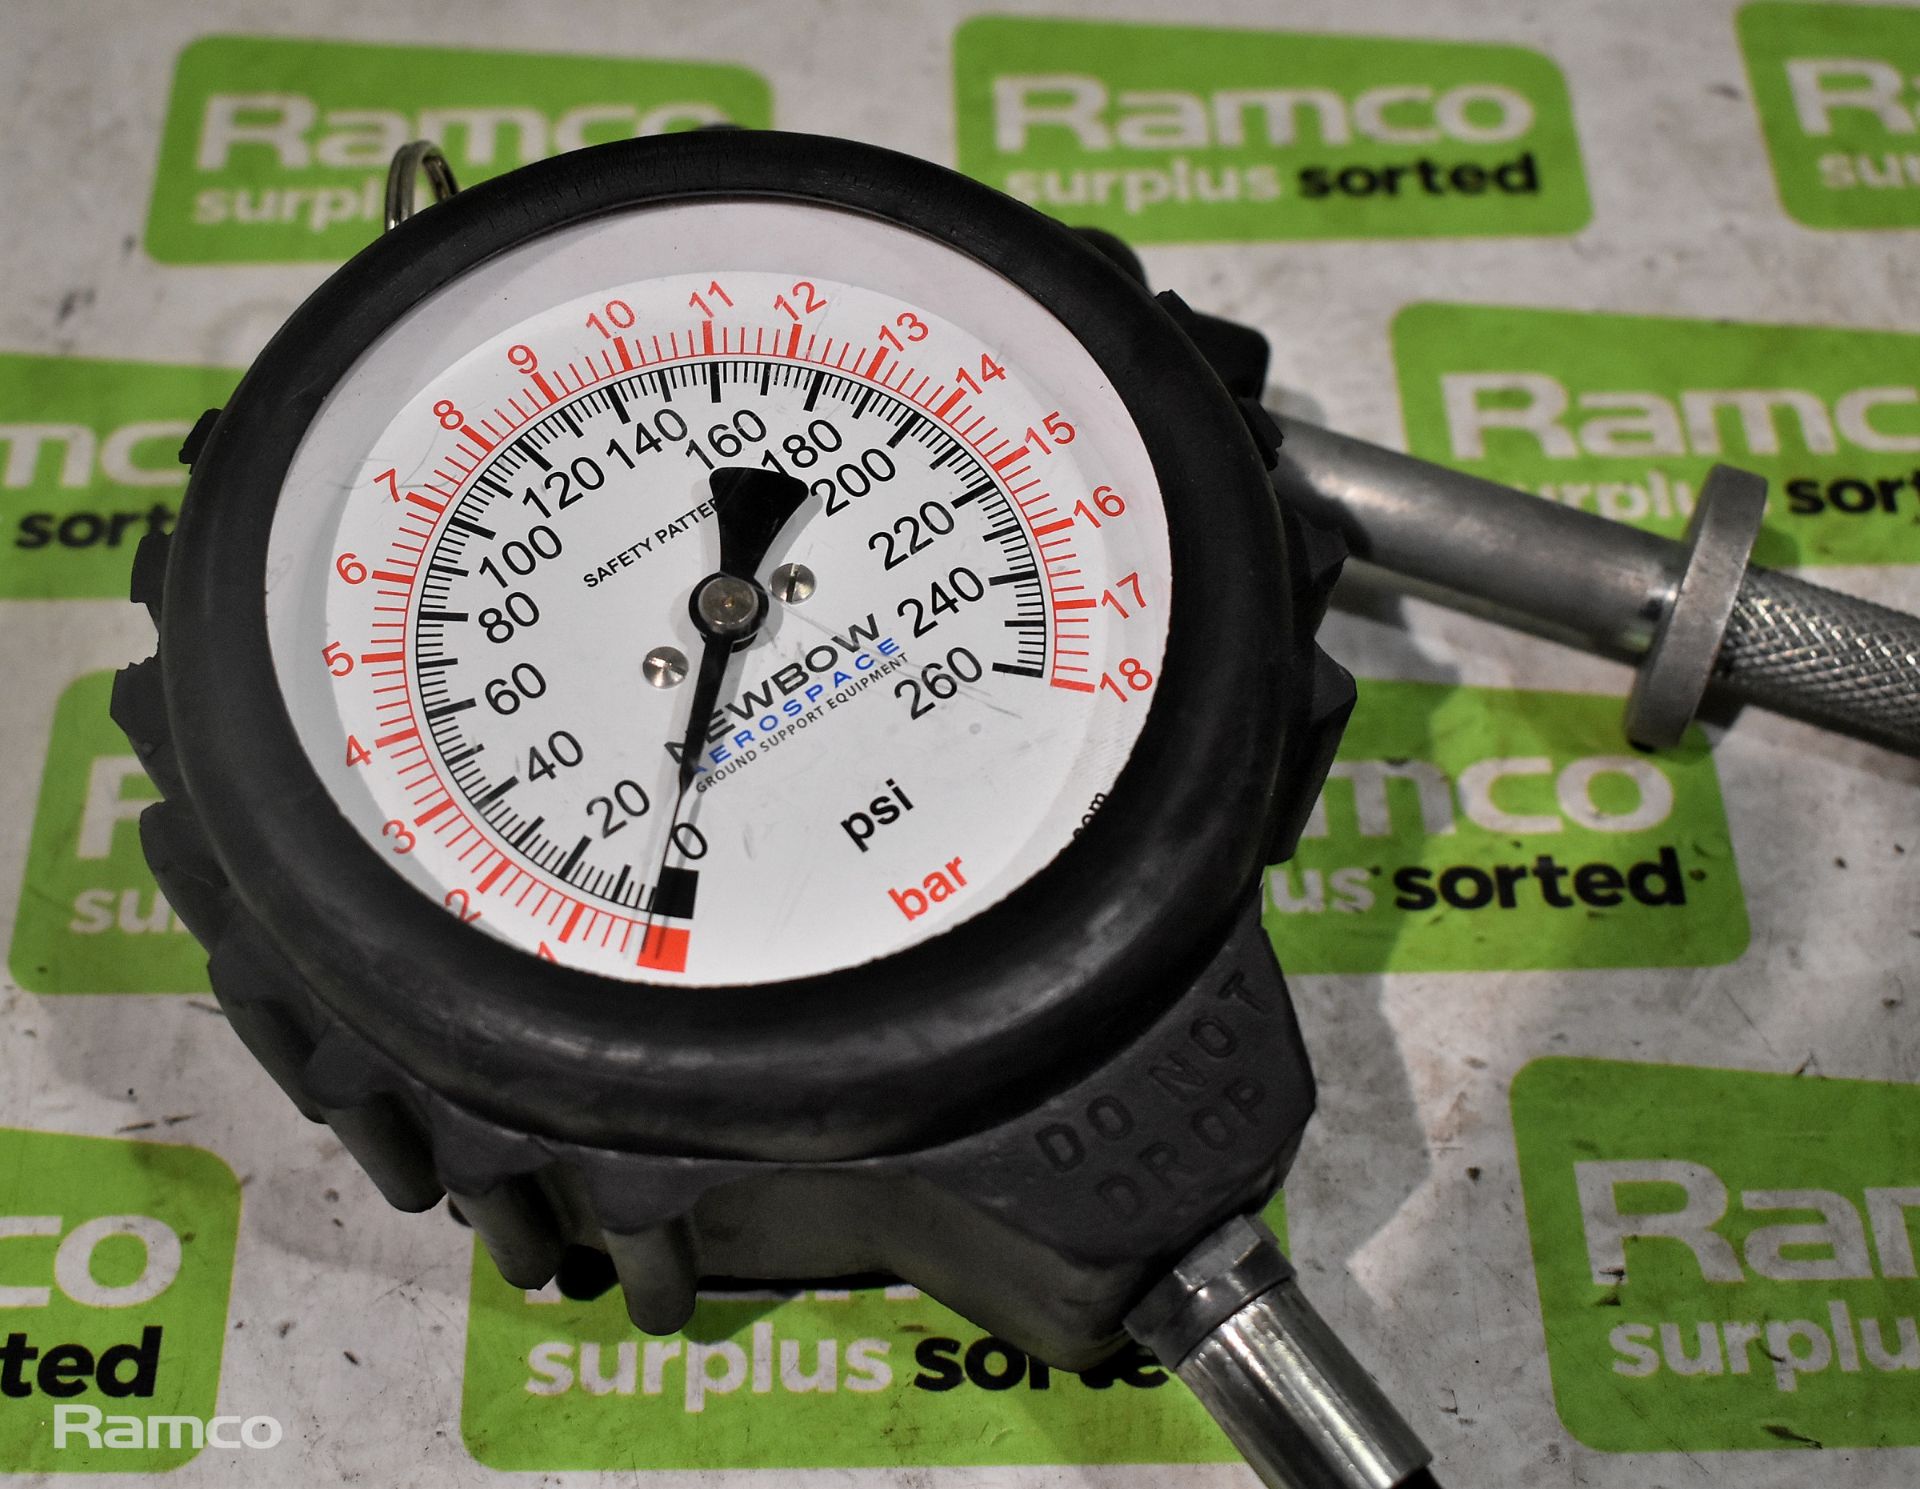 Newbow BA2604 tyre pressure gauge - Image 2 of 2